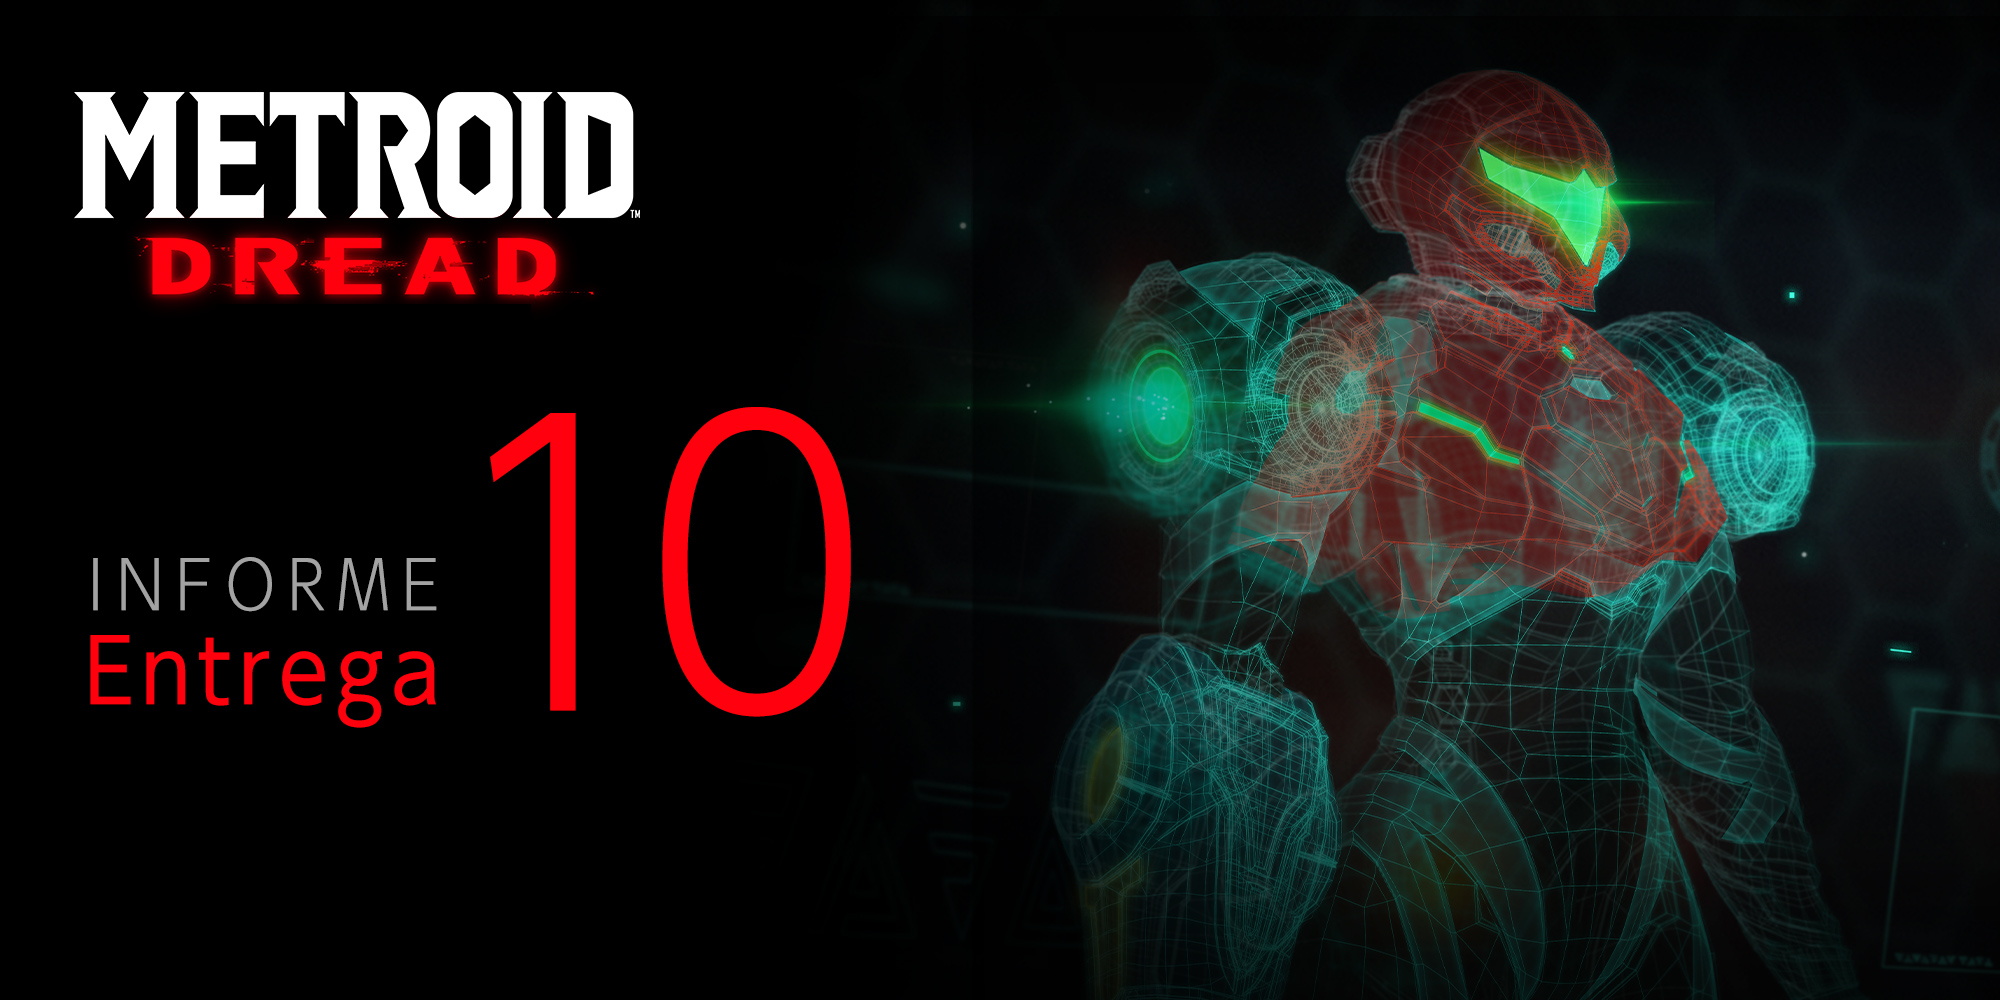 Entrega 10 del informe de Metroid Dread: Antes de partir hacia el planeta ZDR...